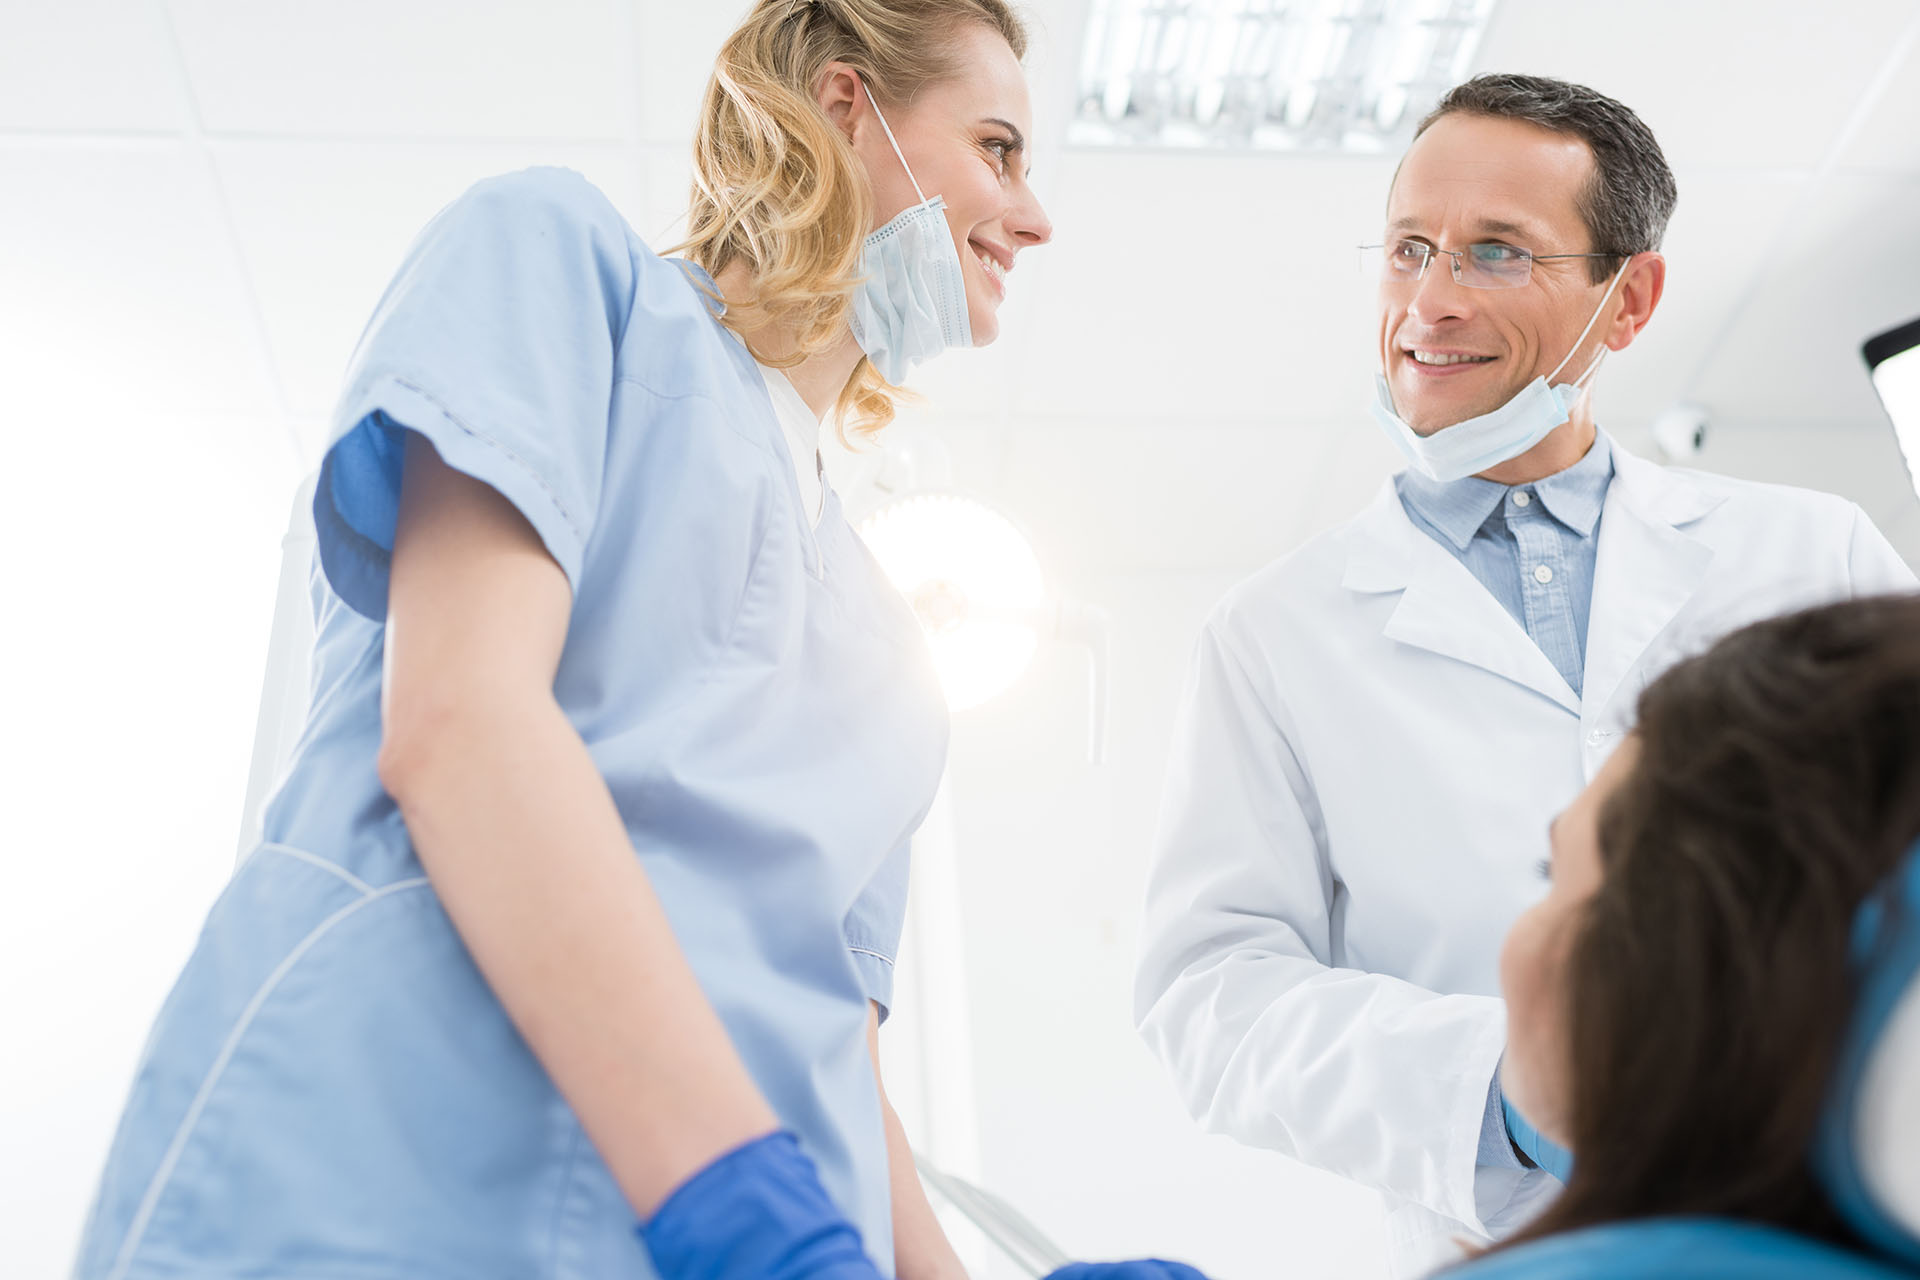 Clínica Dental Andrea Compte, tu Centro Odontológico especializado. Enfermedad periodontal en Cervera del Maestre. Médicos y paciente hablando en la clínica dental.